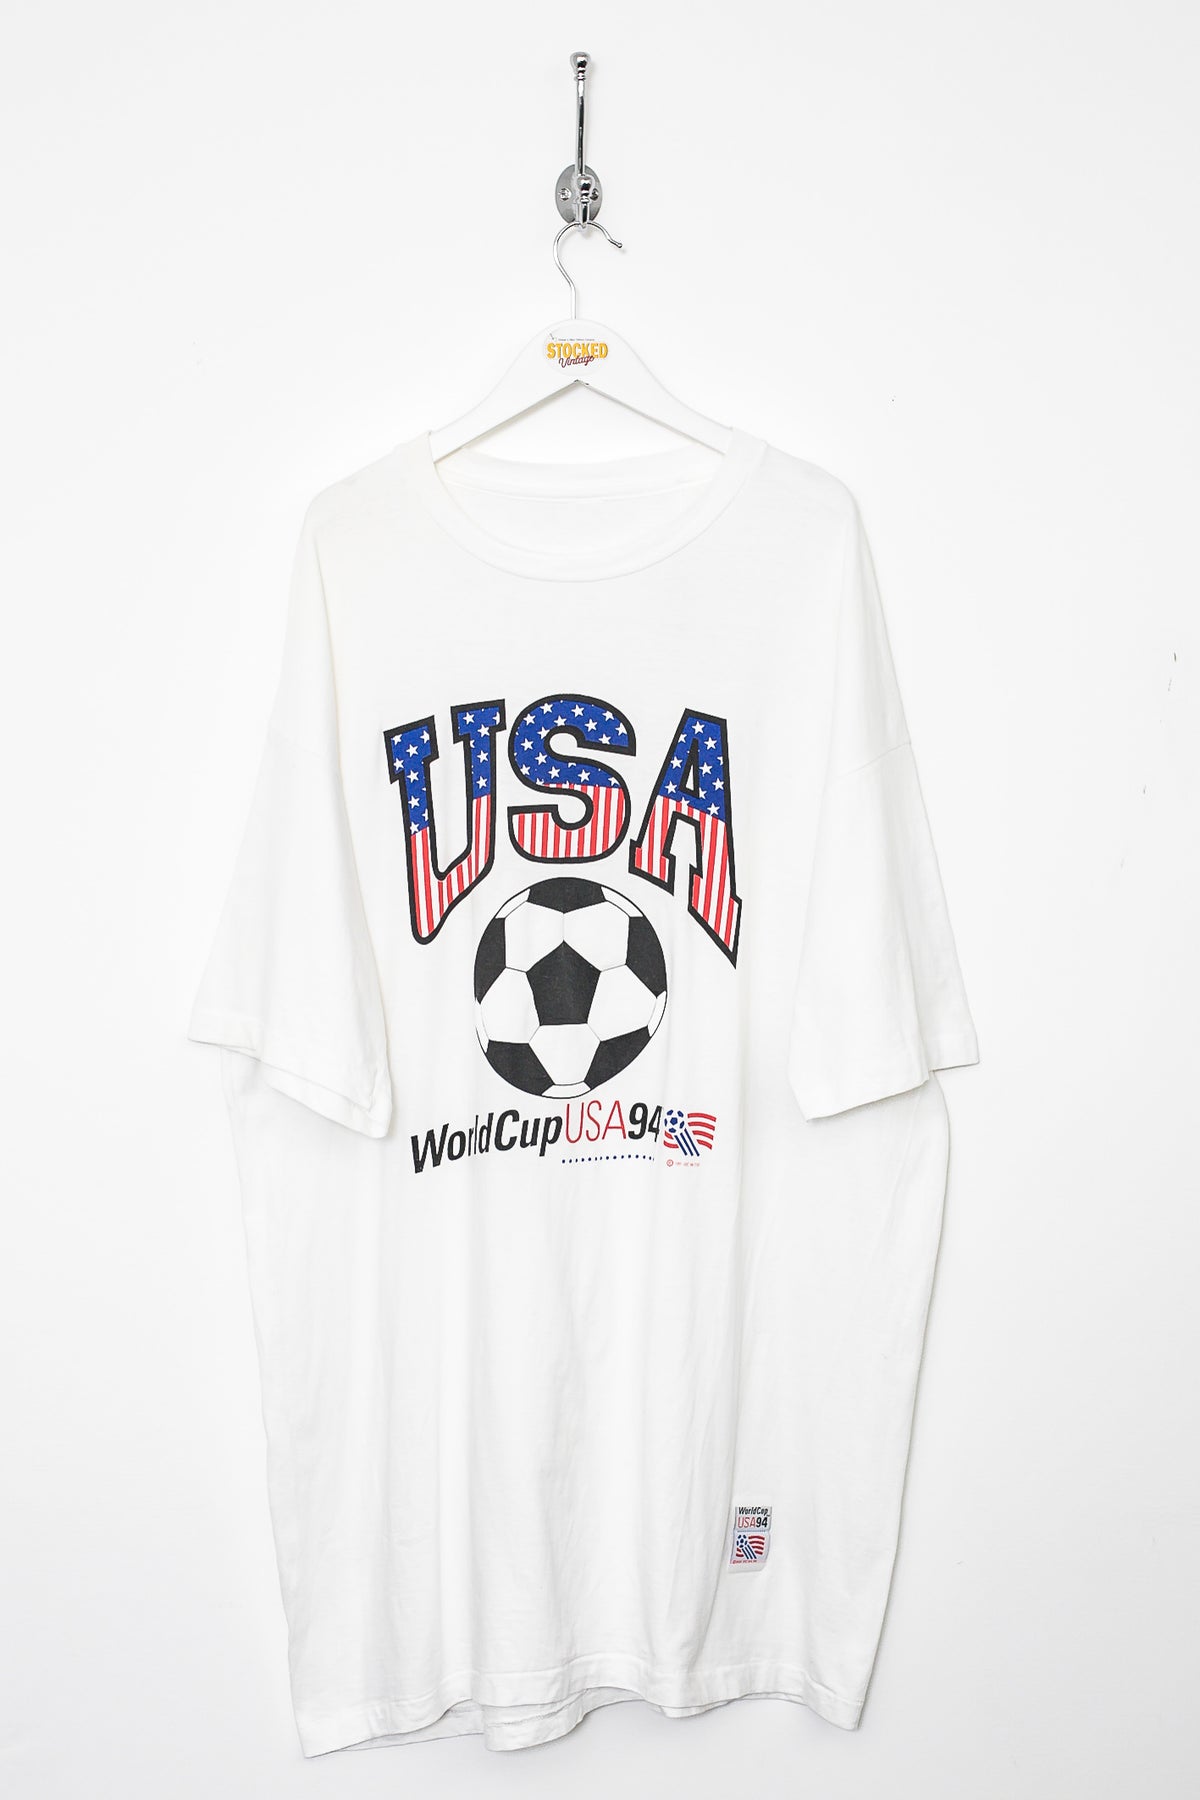 1994 World Cup USA Tee (XXL)